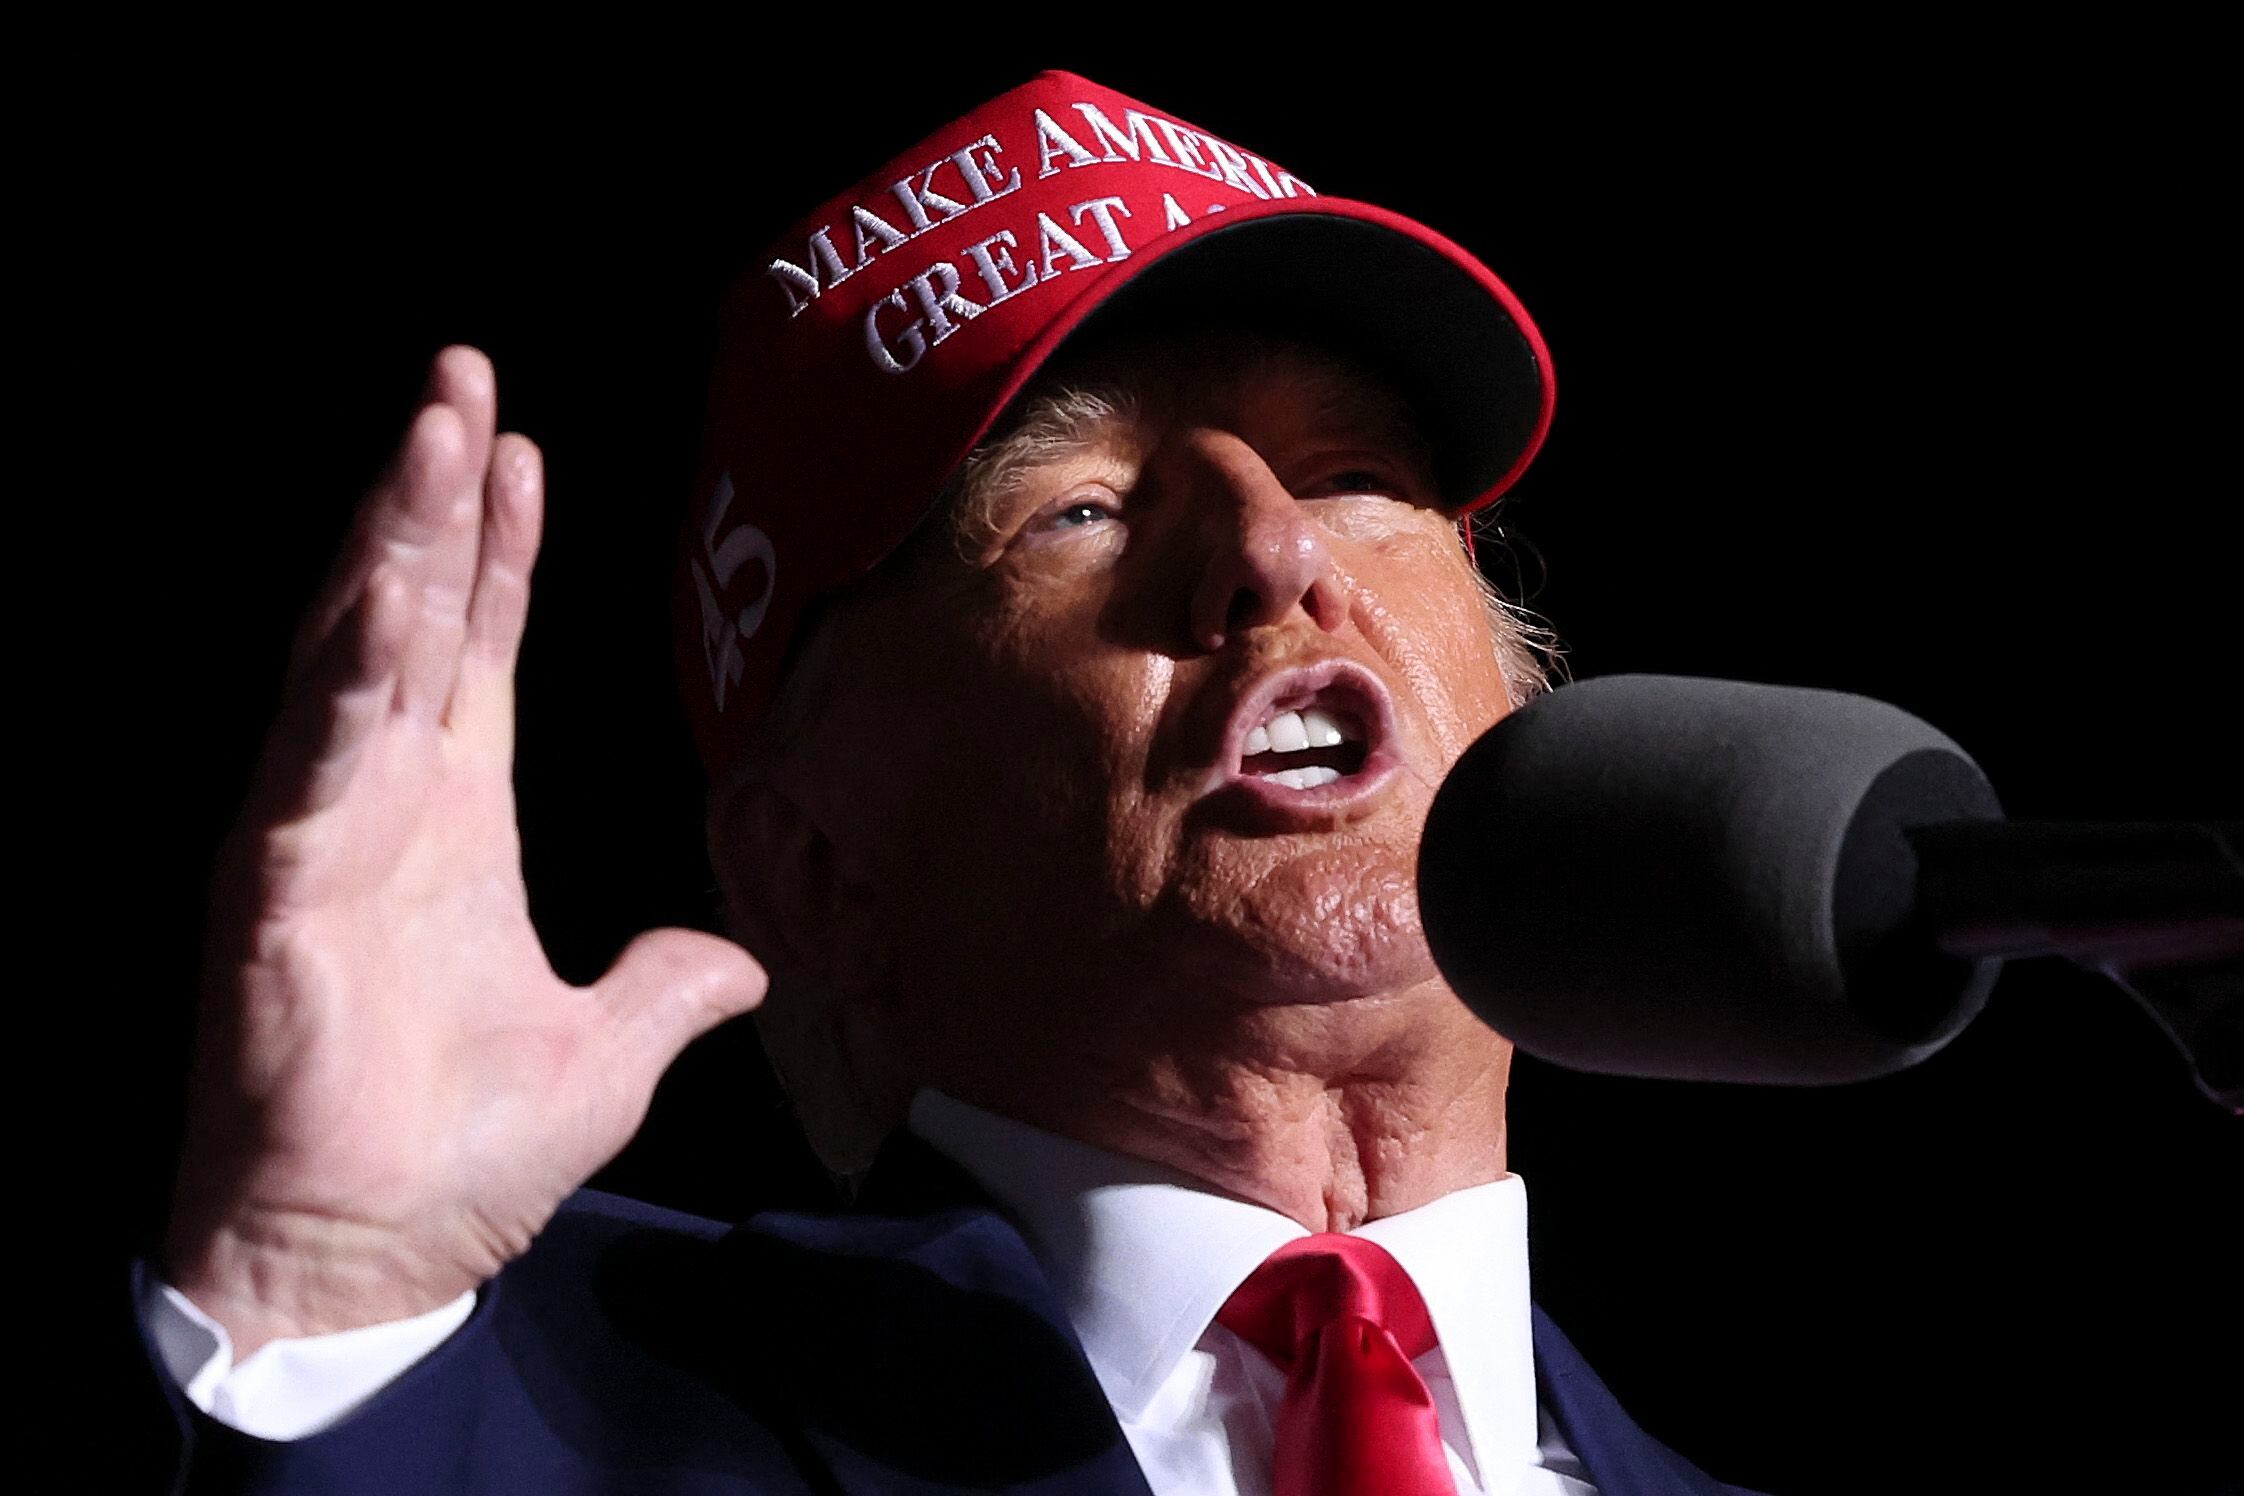 LATROBE, PENNSYLVANIA. El expresidente Donald Trump pidió en este estado a sus votantes que apoyen a los republicanos en las próximas elecciones para salvar "el sueño americano". Foto AFP